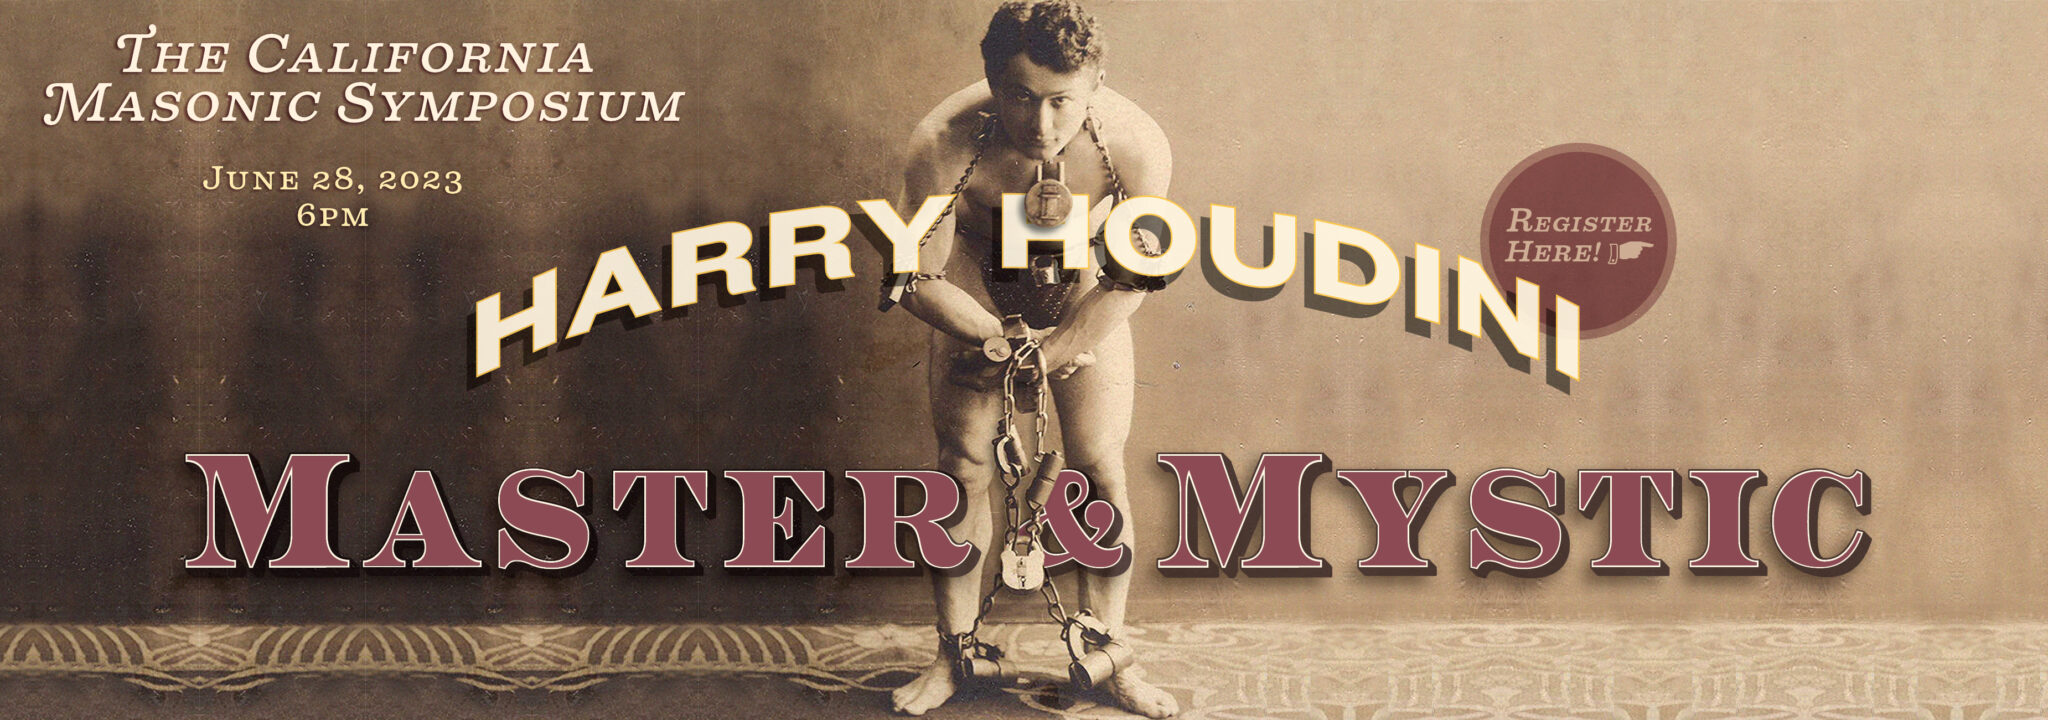 Simpósio Maçônico da Califórnia 2023: Harry Houdini - Master & Mystic. Explorando as conexões entre magia e Maçonaria, Maçonaria